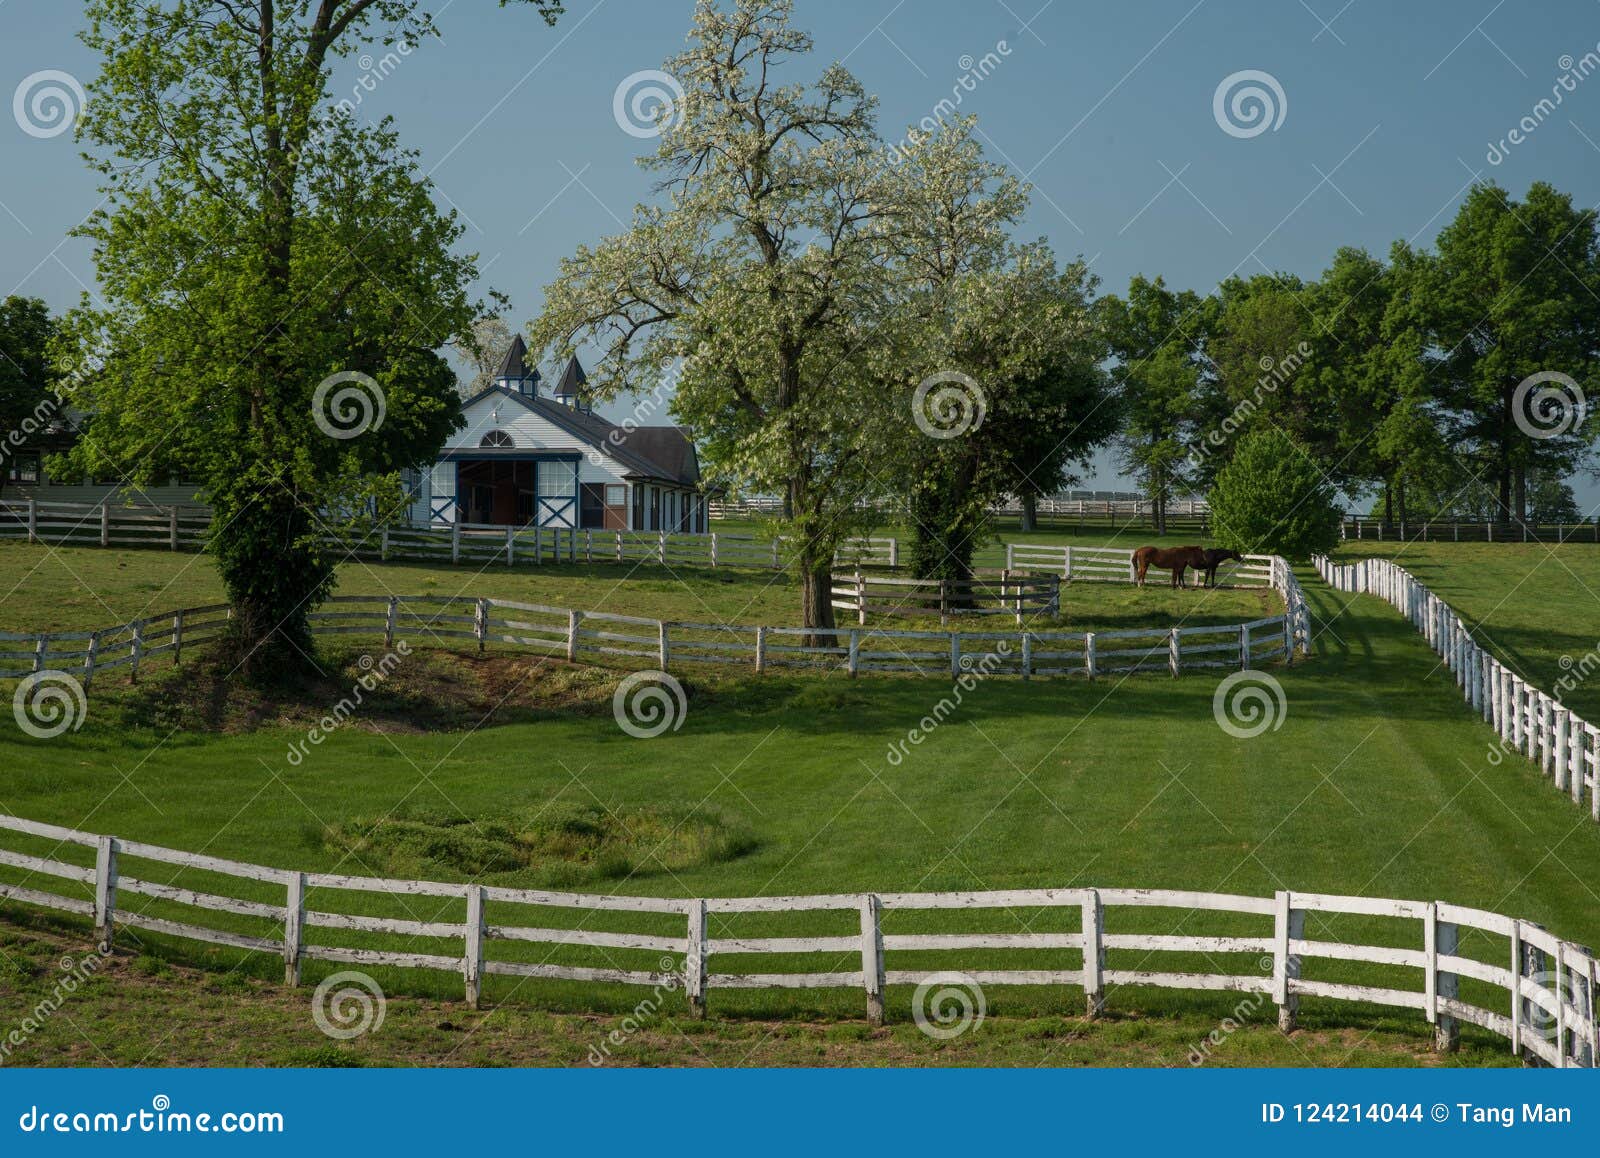 horse bluegrass grazing at manchester farm in lexington kentucky